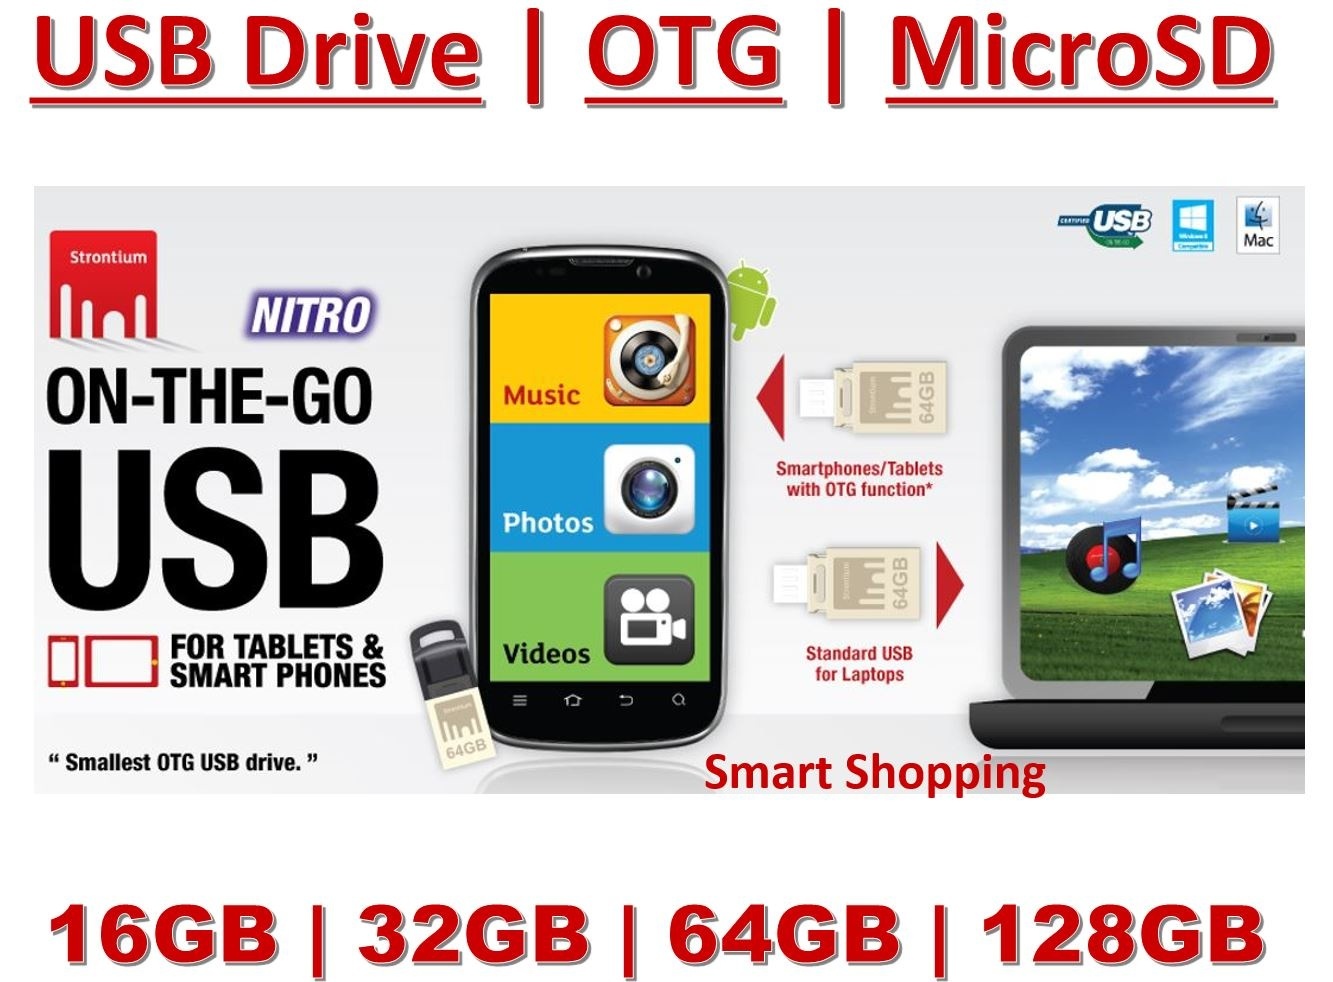 【クリックでお店のこの商品のページへ】Strontium Micro SD Class 10 OTG Memory Card MicroSD SanDisk USB 3.0 Dual Pendrive ON THE GO hdd 16gb 32gb 64gb 128gb free otg card reader Singapore stock